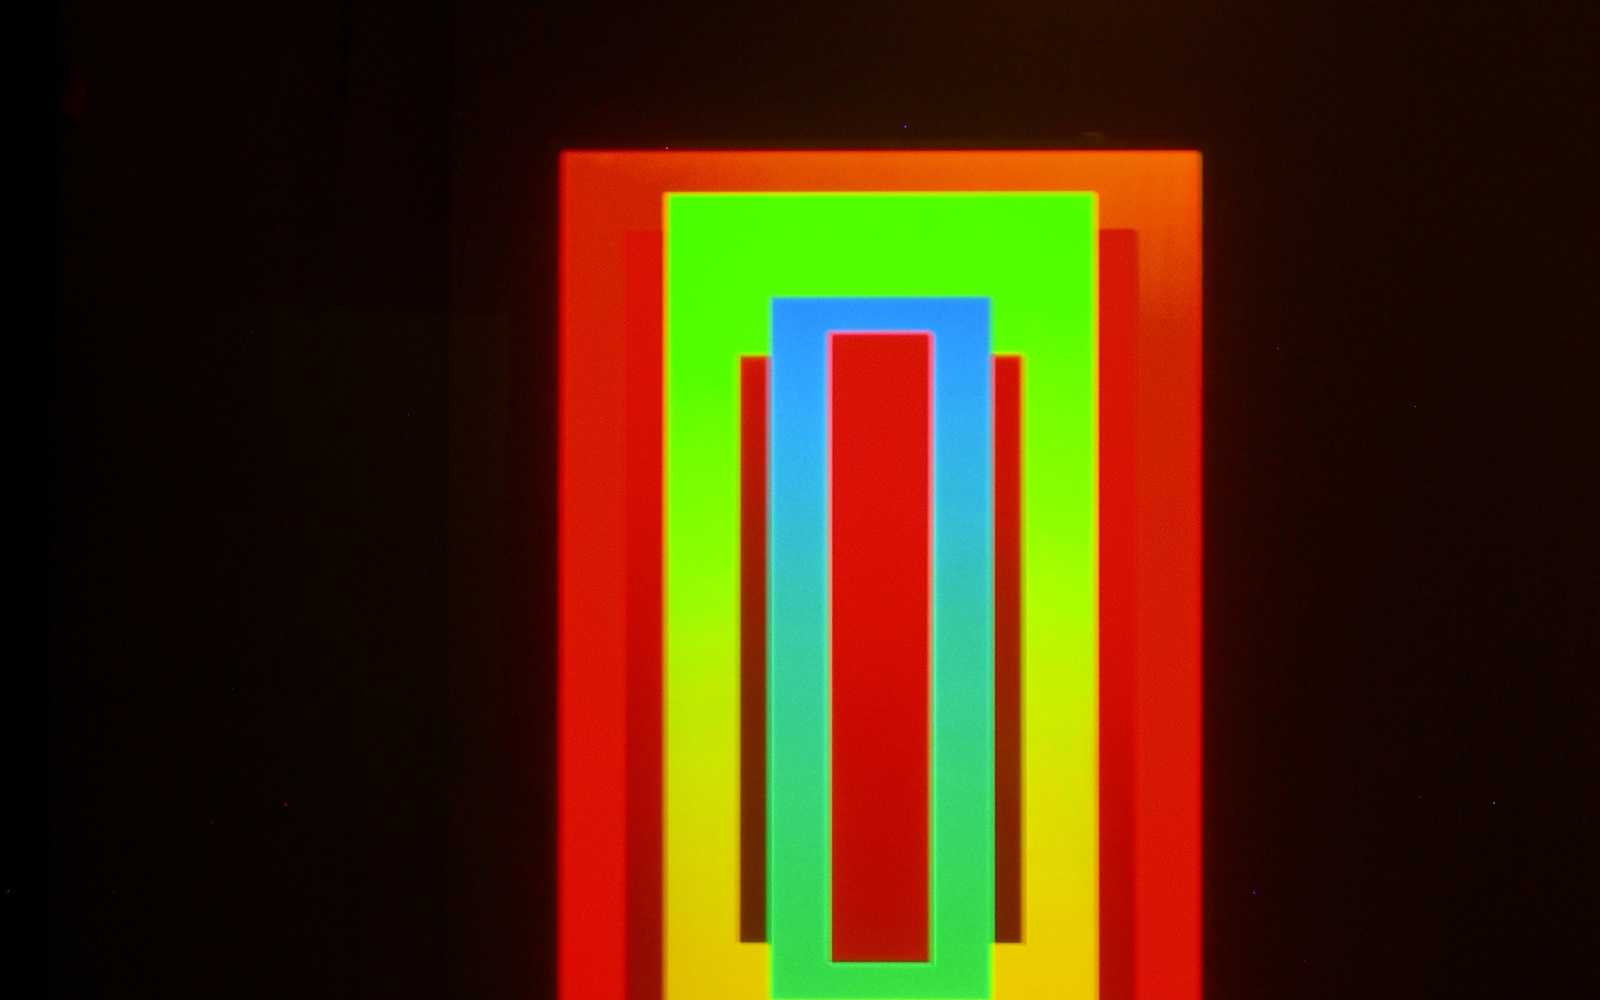 Die Installation Red in Green in Blue #3 von Dieter Jung aus dem Jahr 2011.